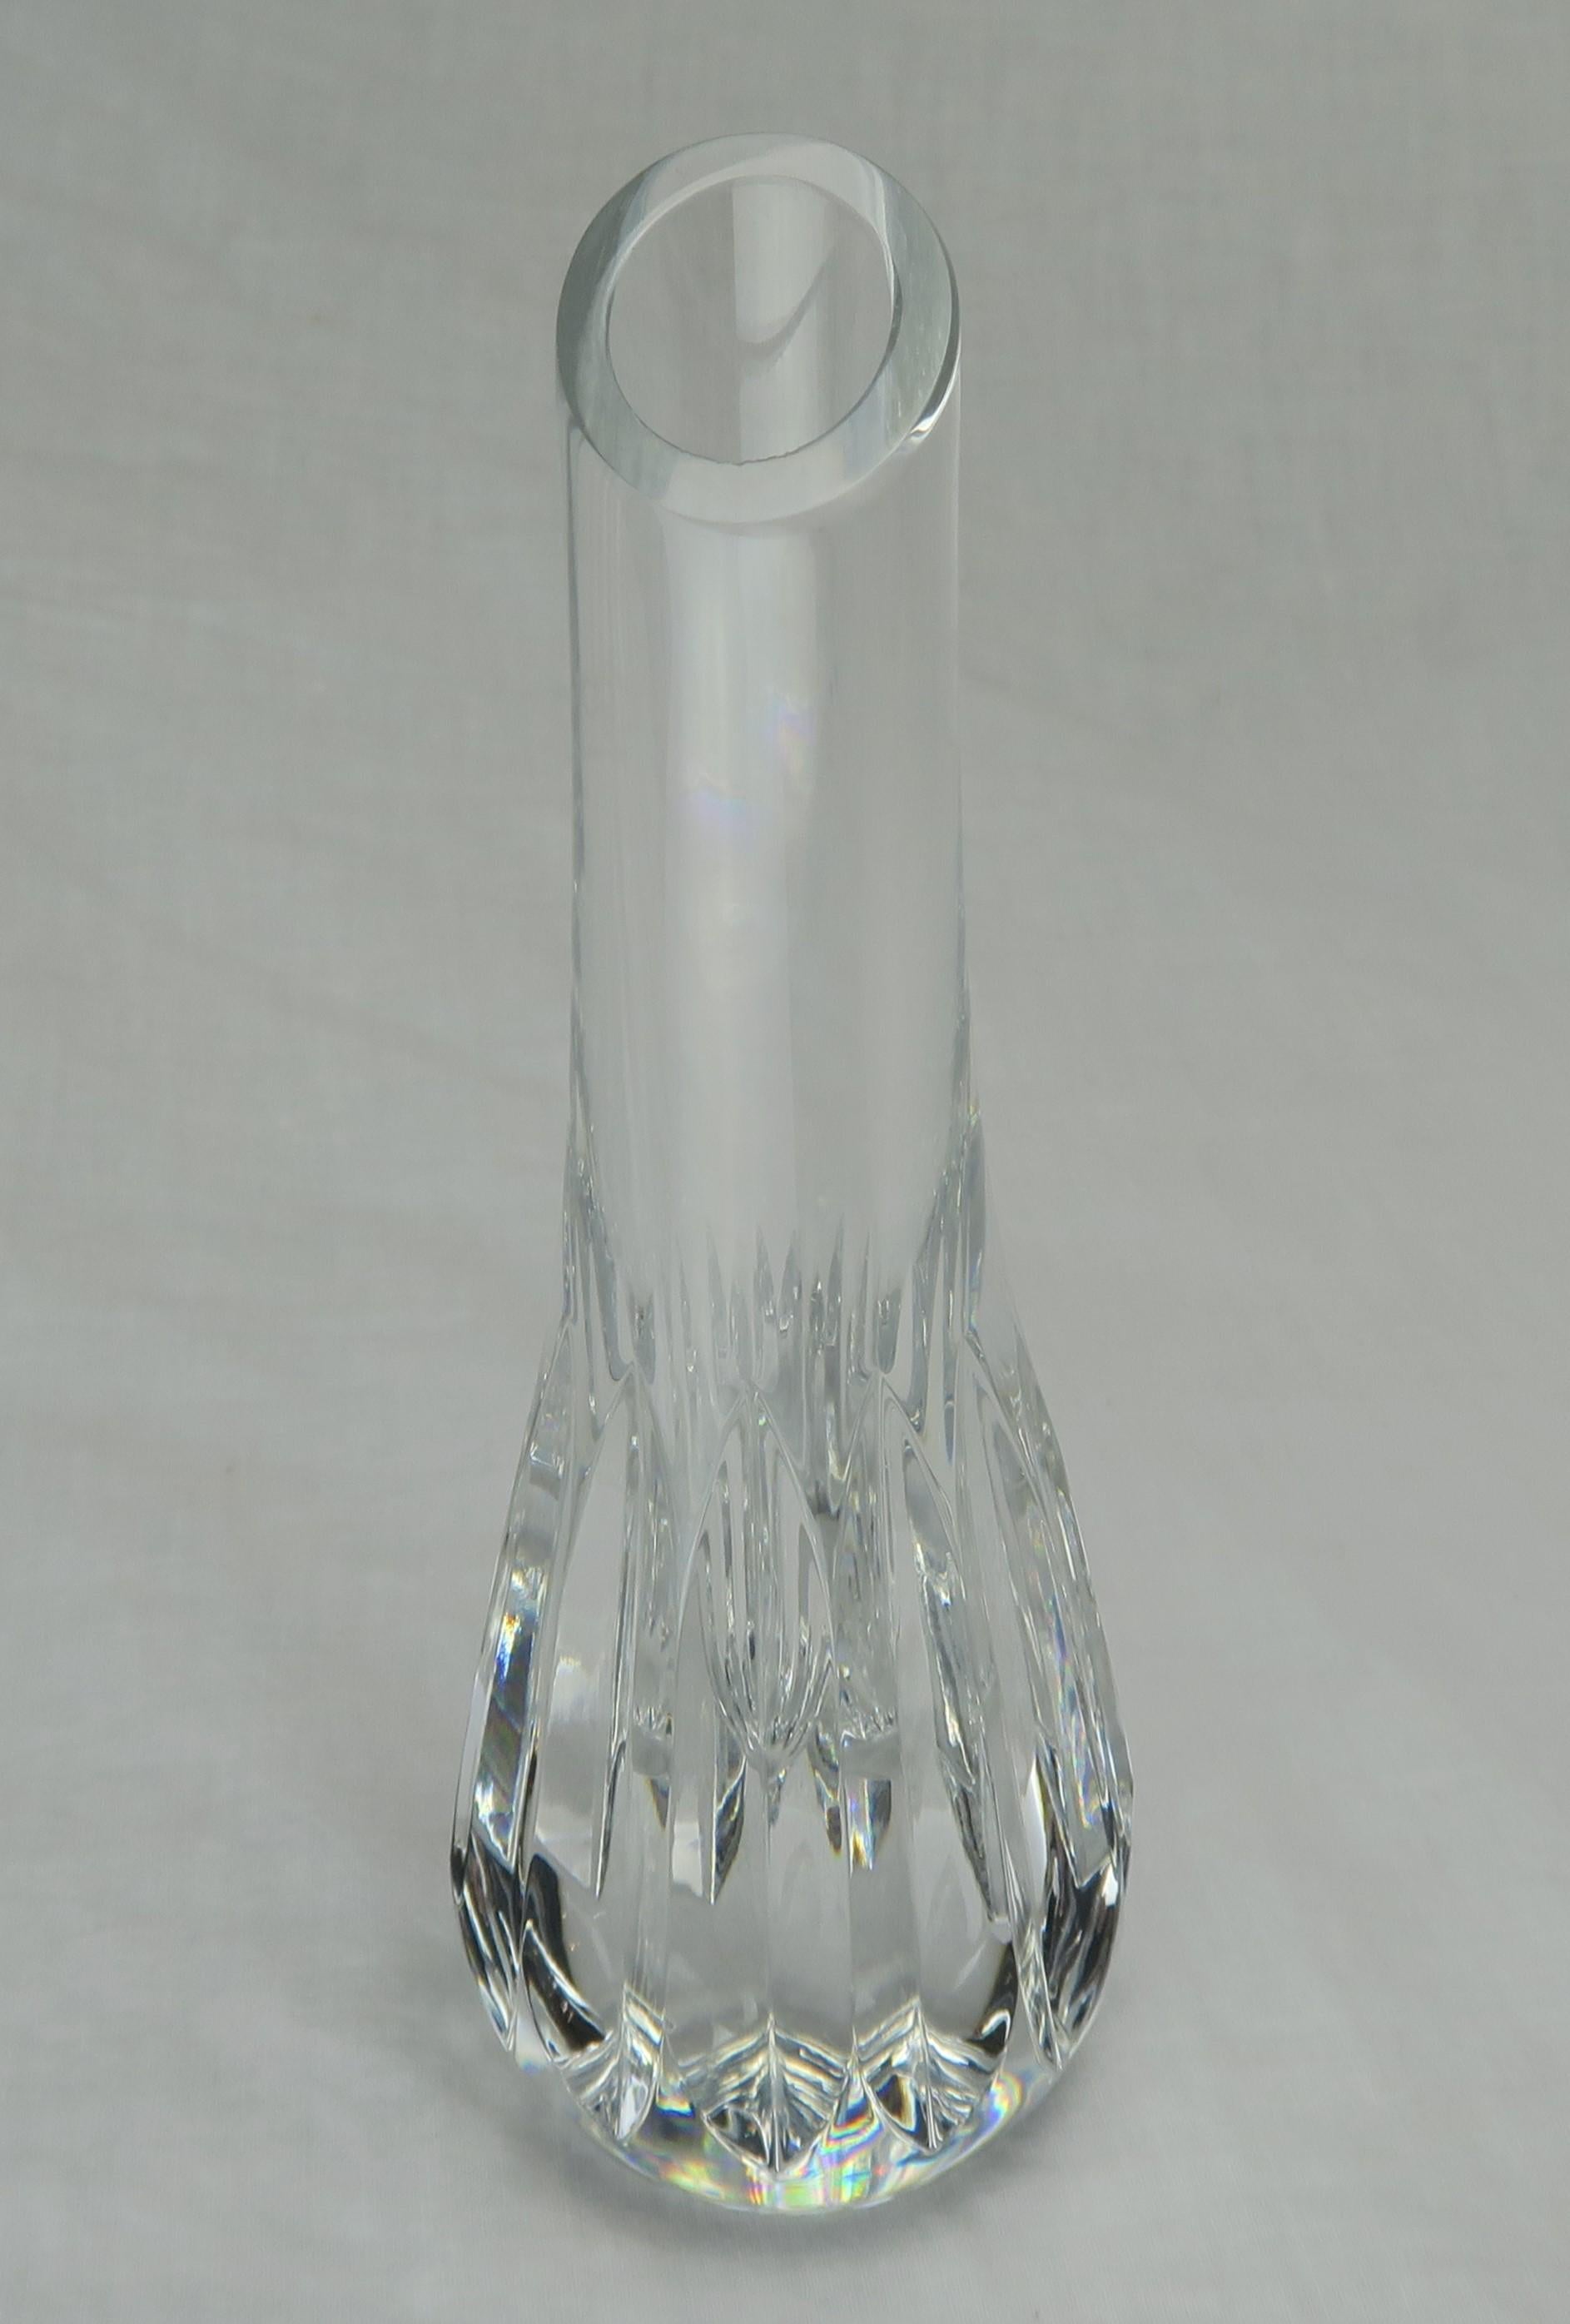 Baccarat Crystal Bud Vase 2